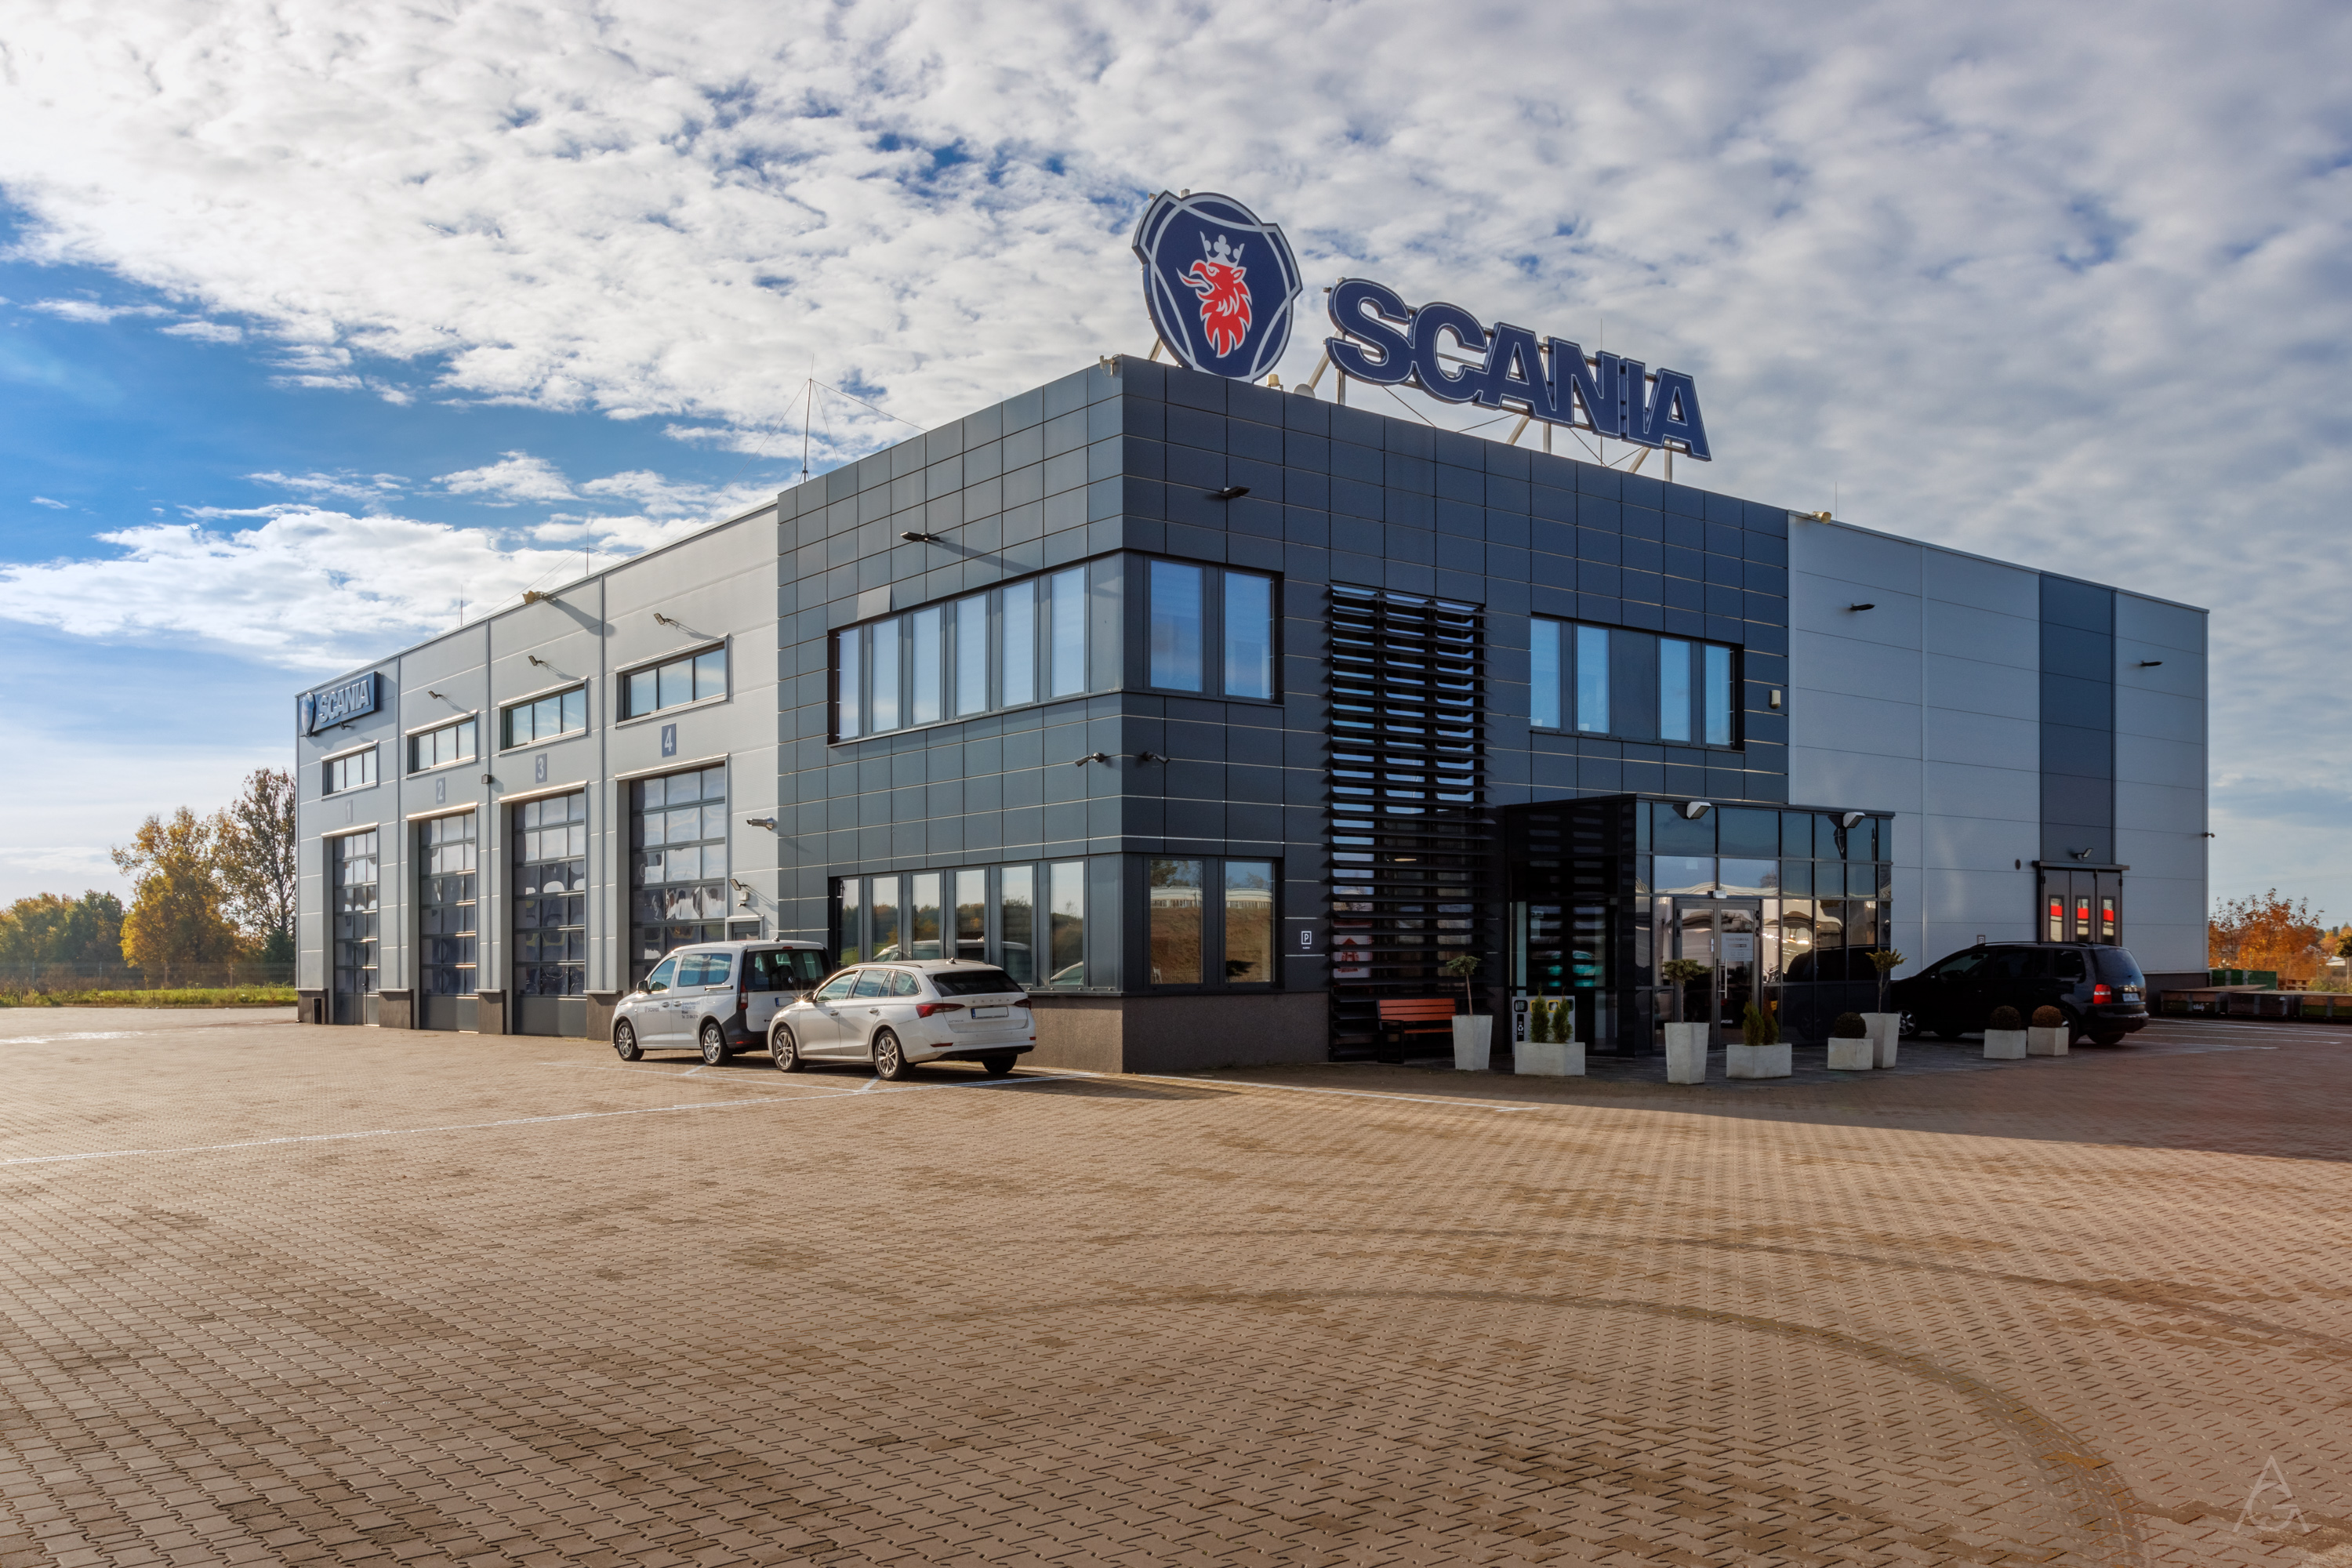 Serwis Scania Polska S.A. w Mławie